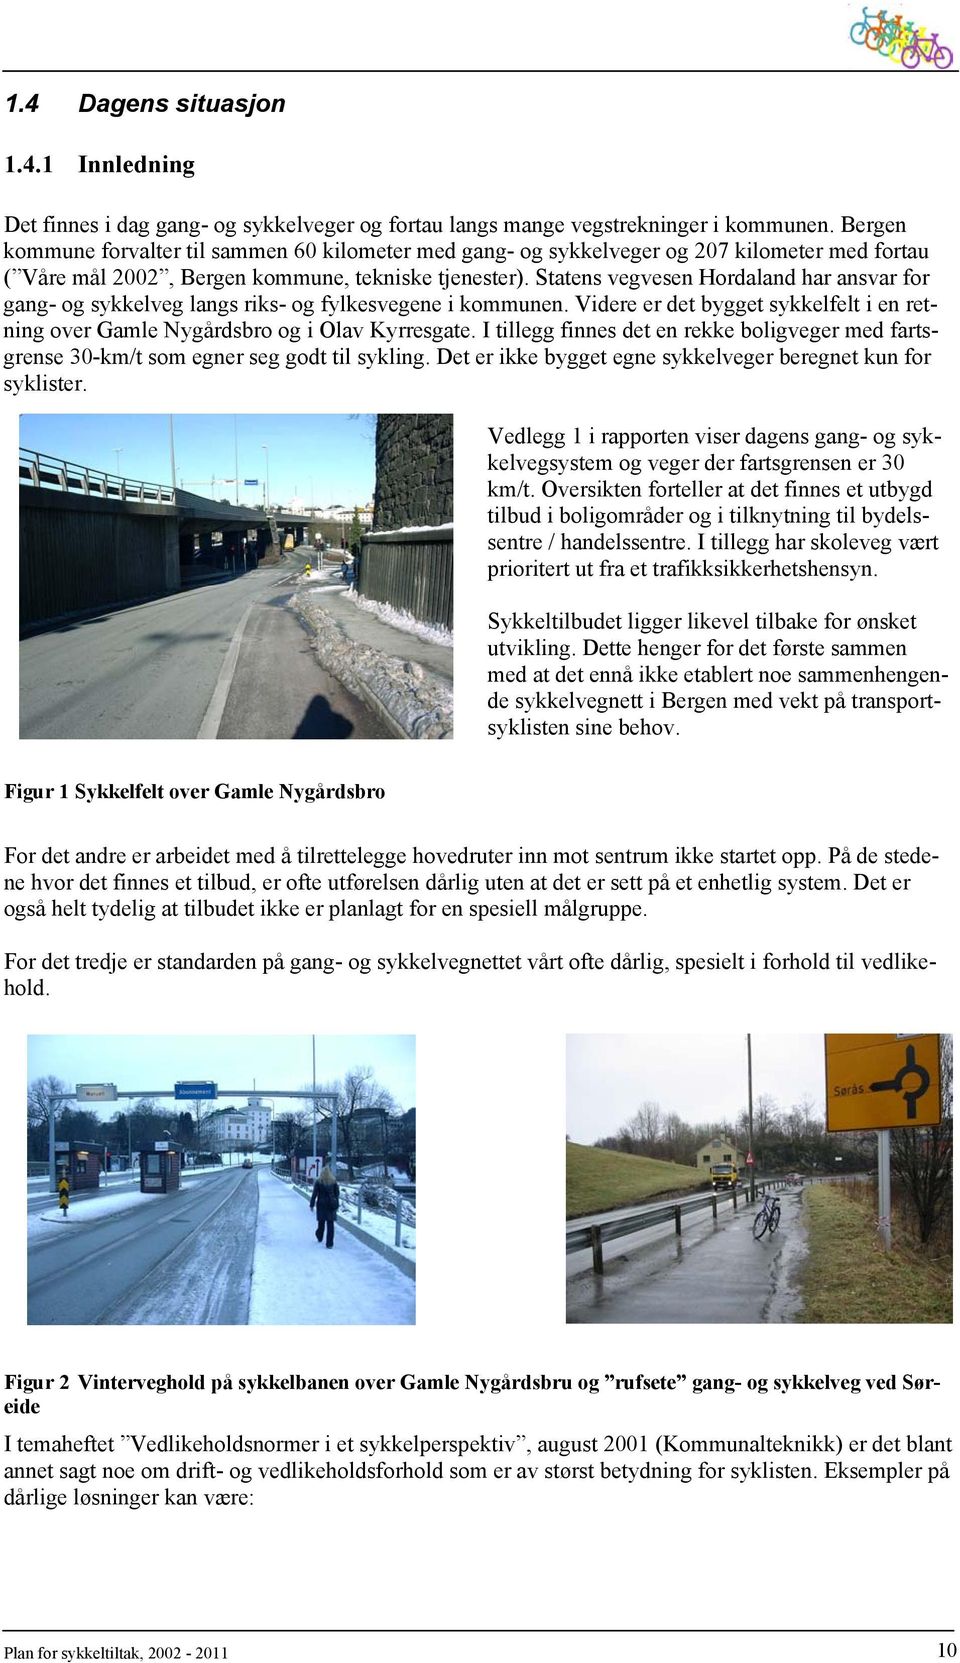 Statens vegvesen Hordaland har ansvar for gang- og sykkelveg langs riks- og fylkesvegene i kommunen. Videre er det bygget sykkelfelt i en retning over Gamle Nygårdsbro og i Olav Kyrresgate.